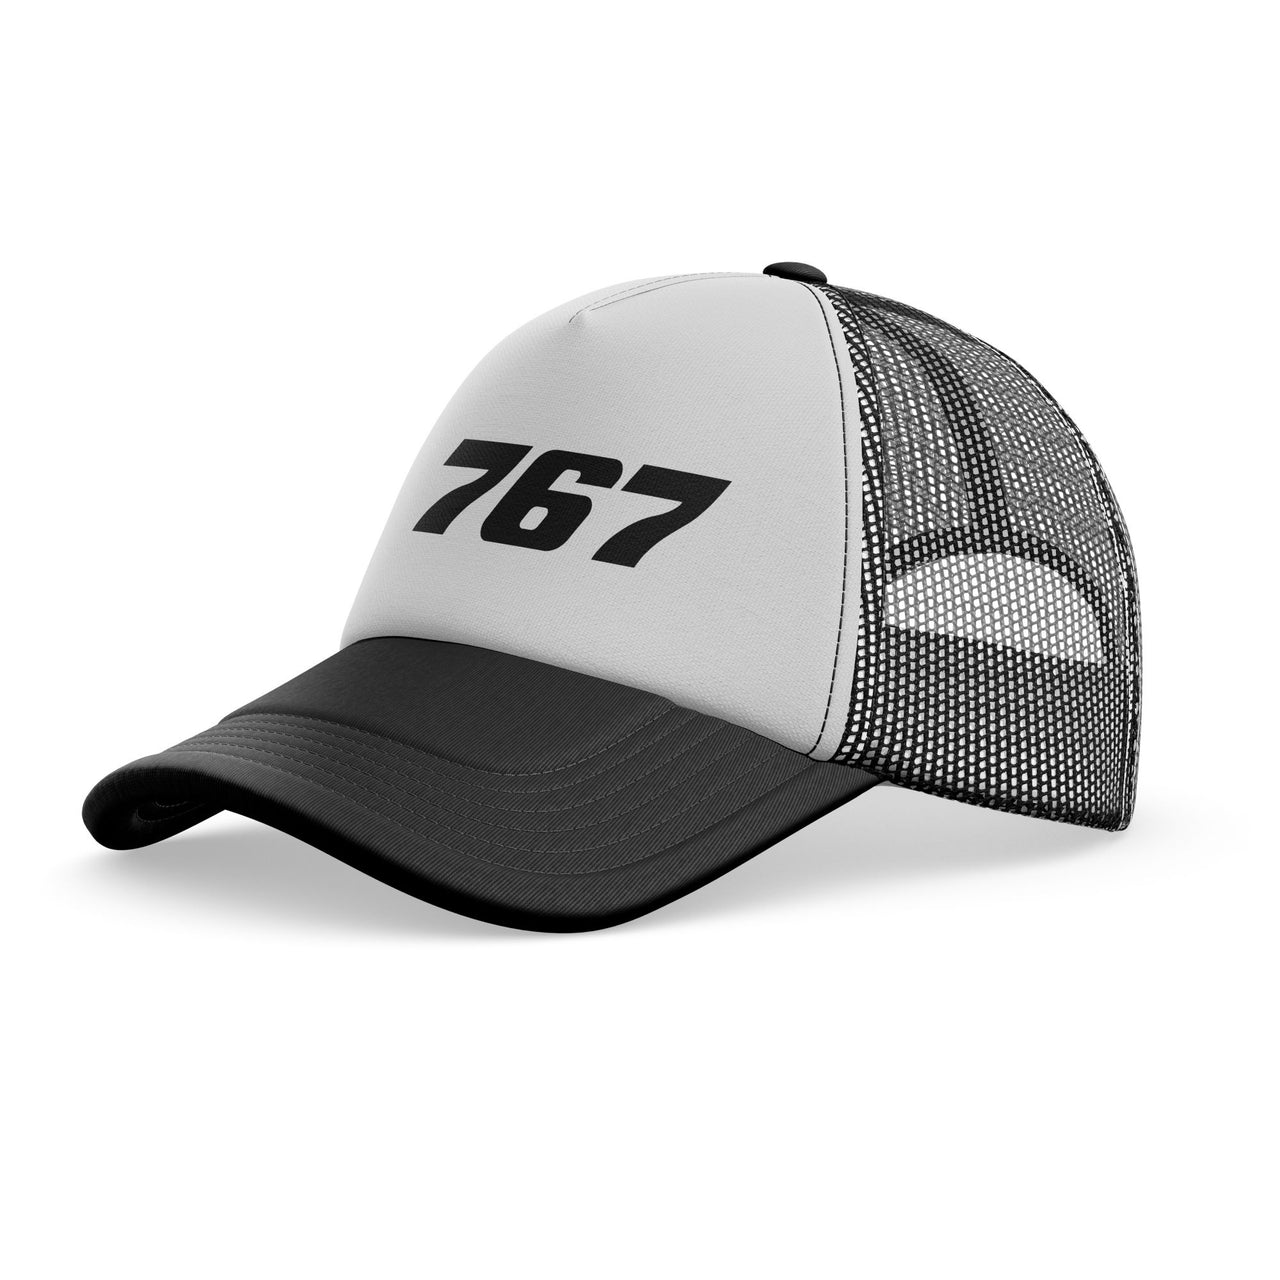 767 Flat Text Designed Trucker Caps & Hats